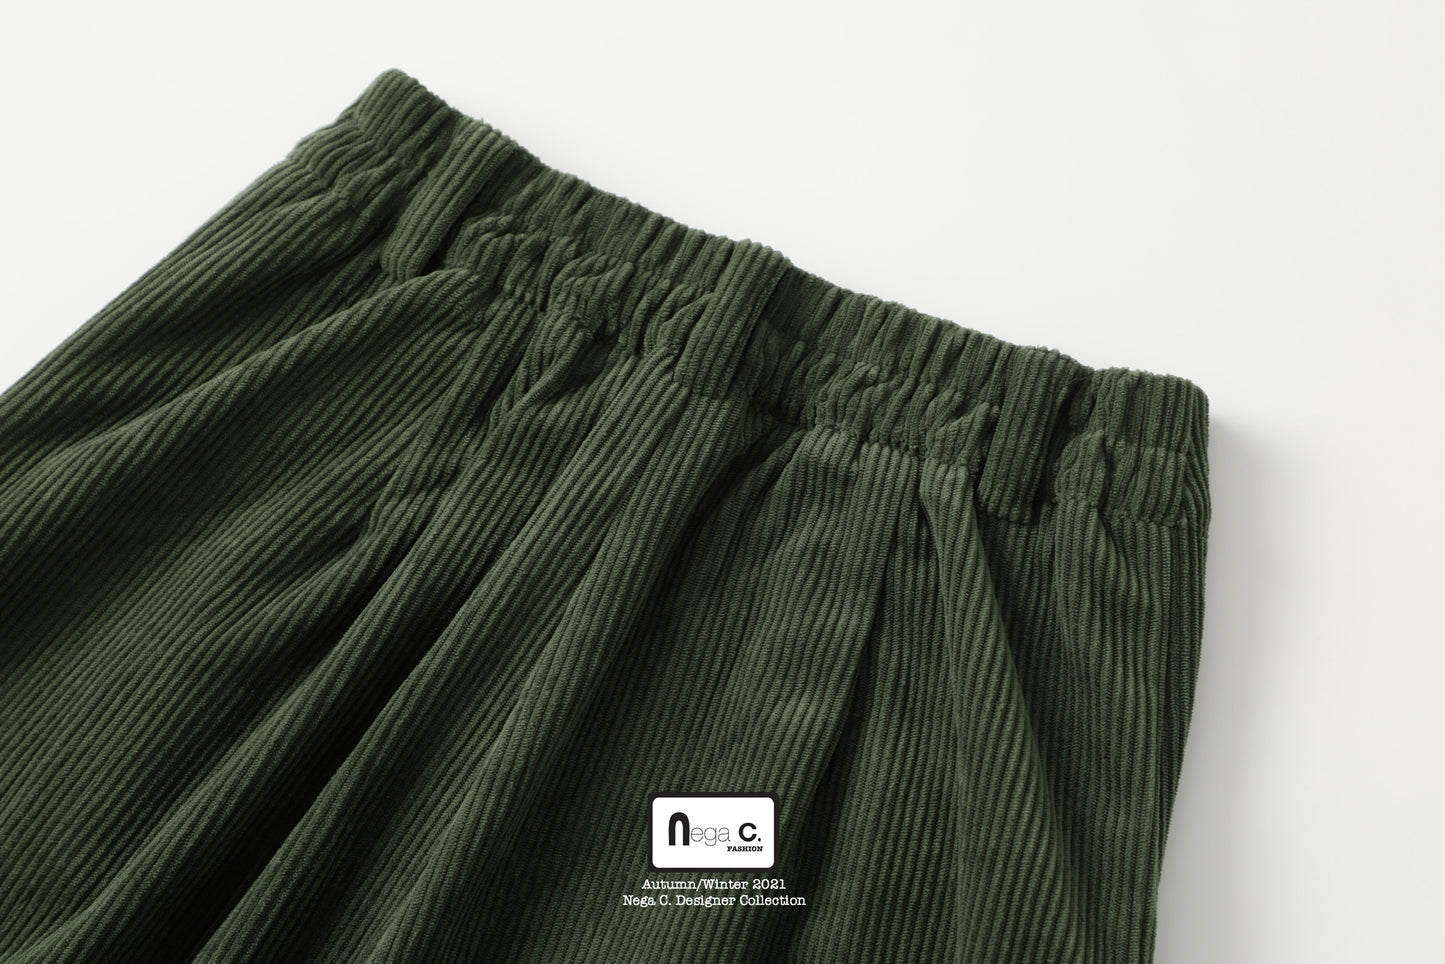 กางเกงขากว้างผ้าลูกฟูก Nega C. | สีเขียว | ยืดหยุ่นเล็กน้อย